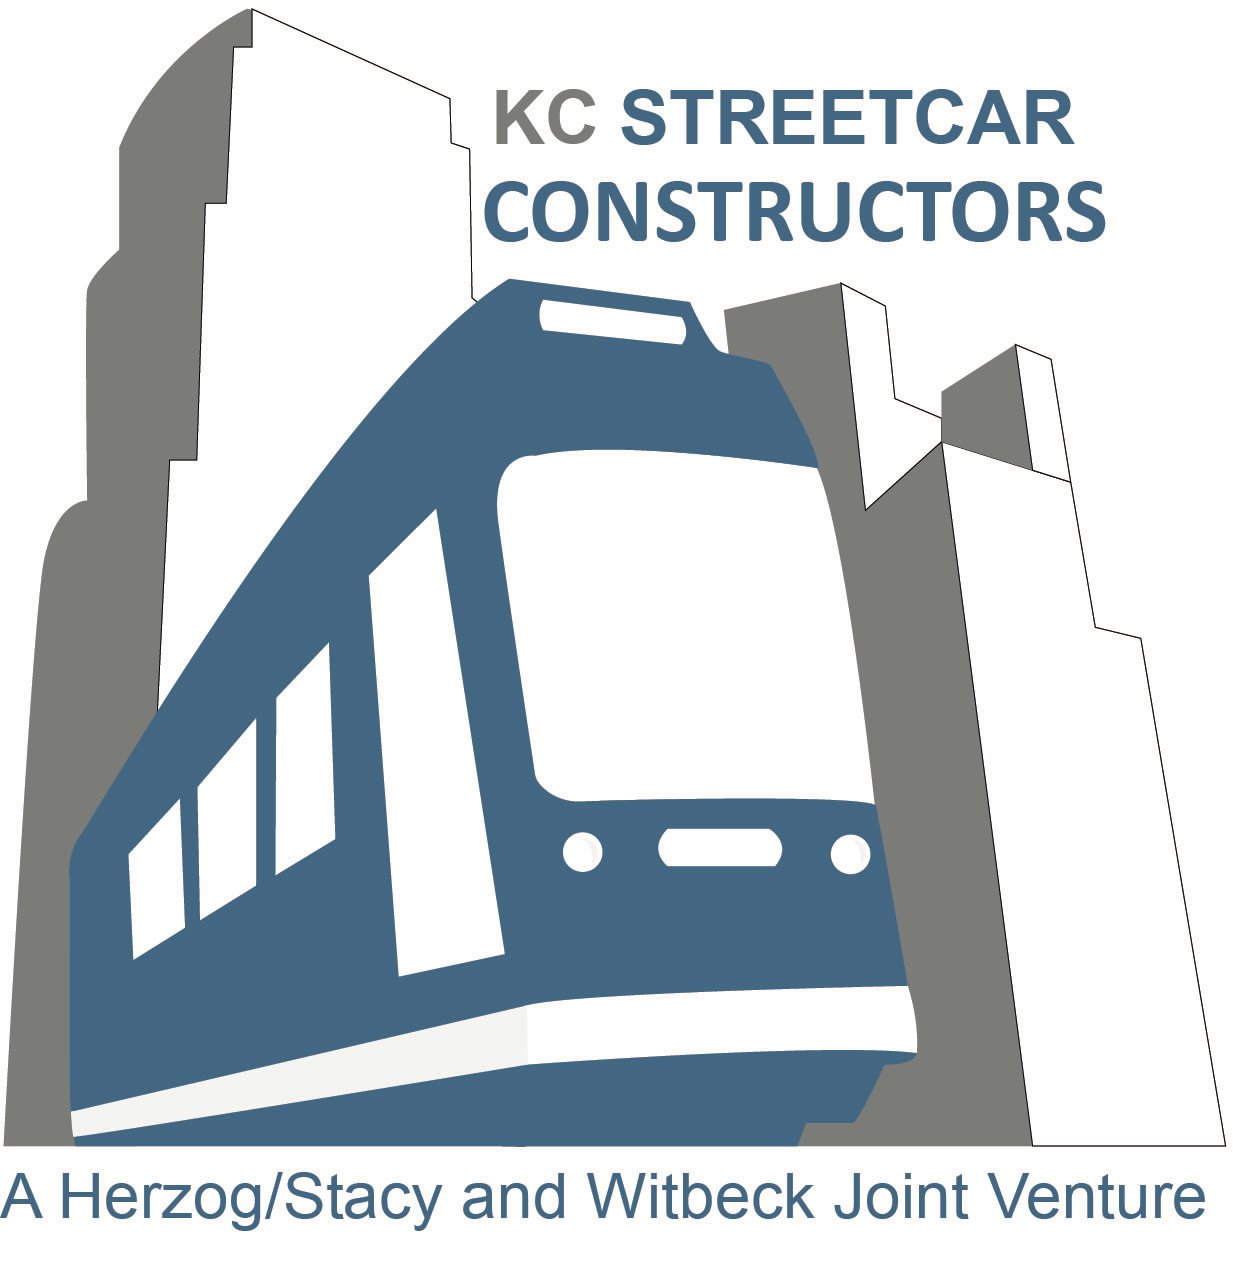 Build KC Streetcar